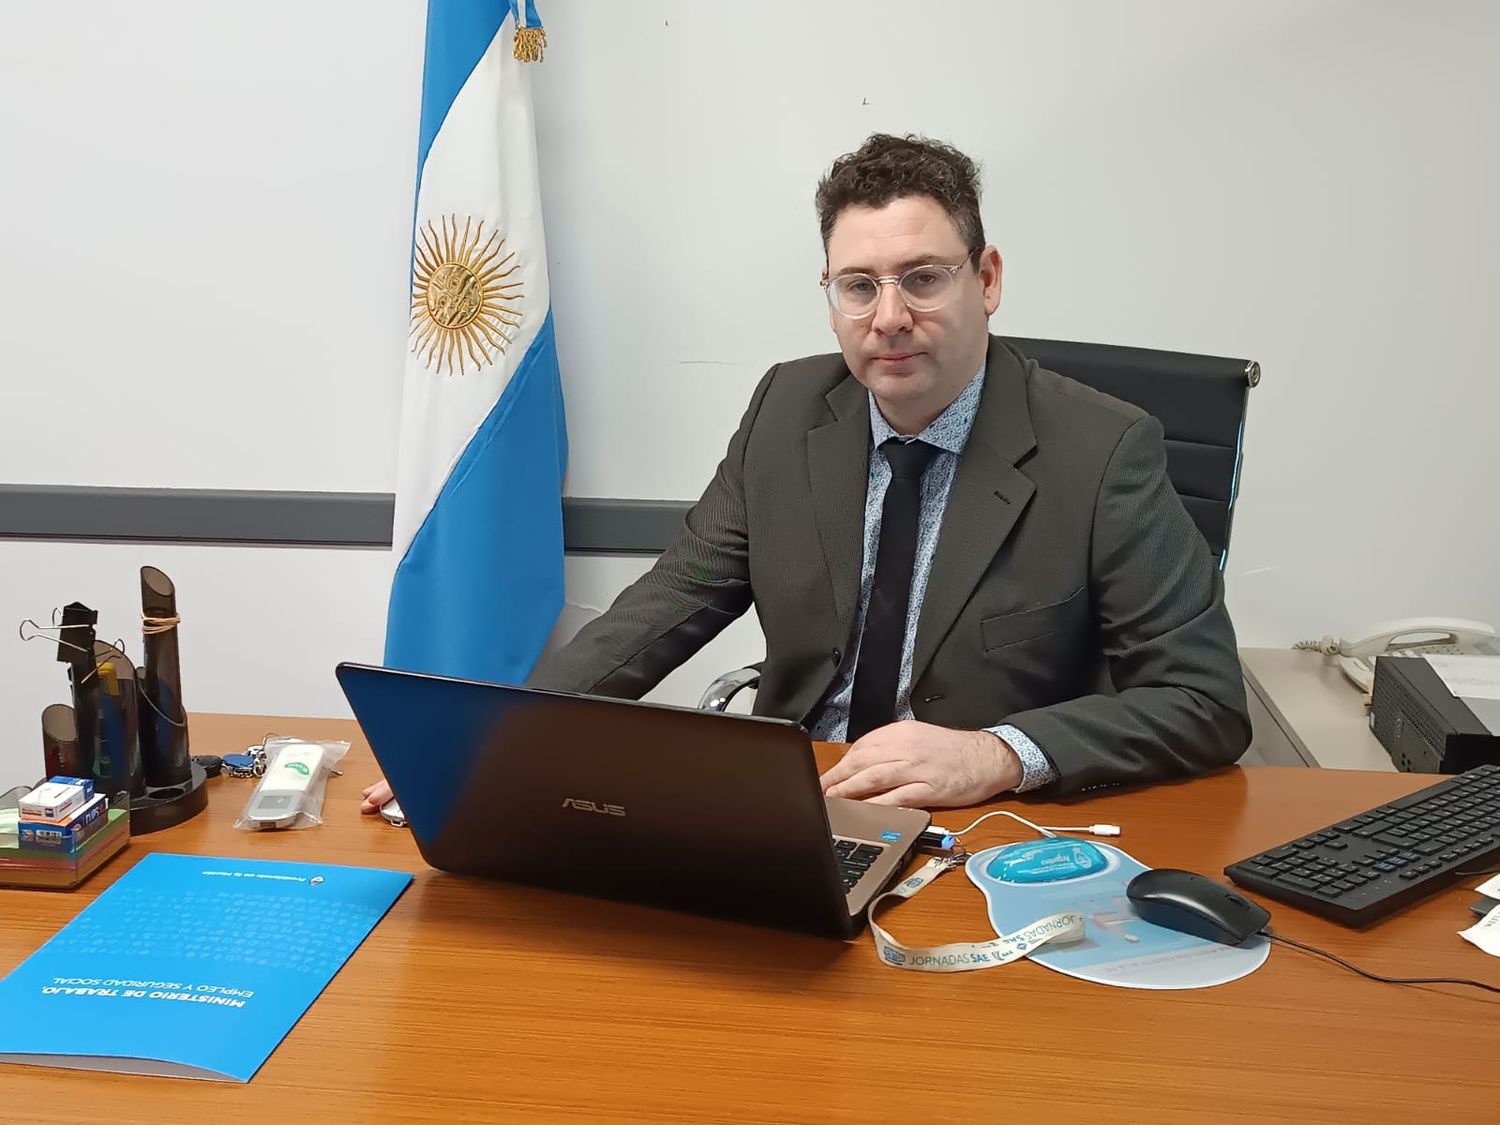 Matías Cestona asumió recientemente en la Delegación del Ministerio de Trabajo de la Nación en Mar del Plata como flamante Jefe de Agencia Territorial.